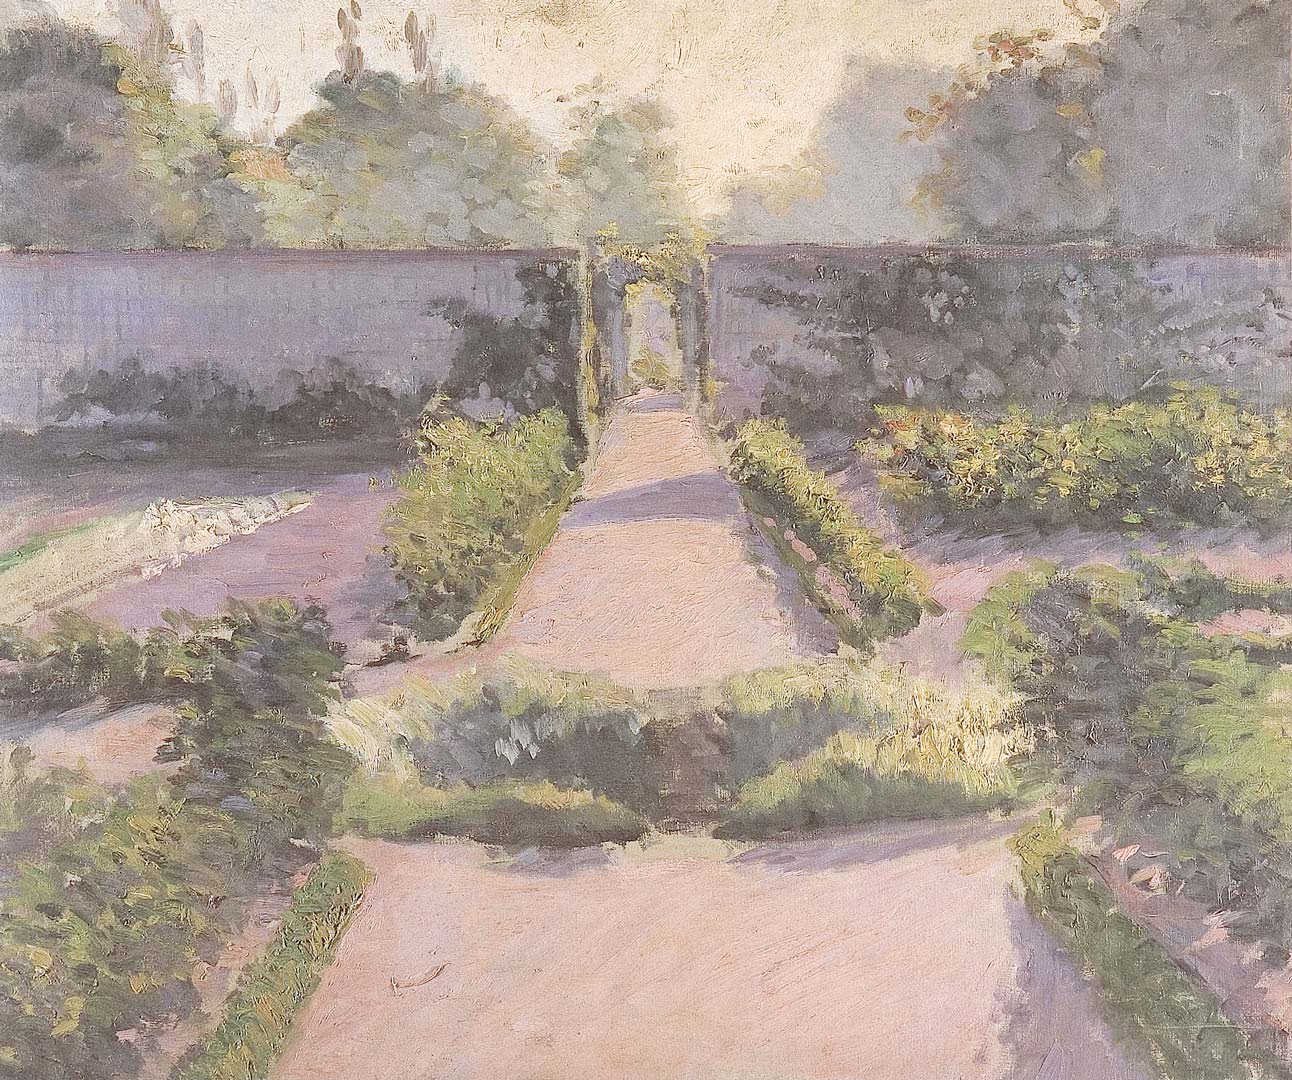 Le jardin potager yerres 1875 1878 caillebotte